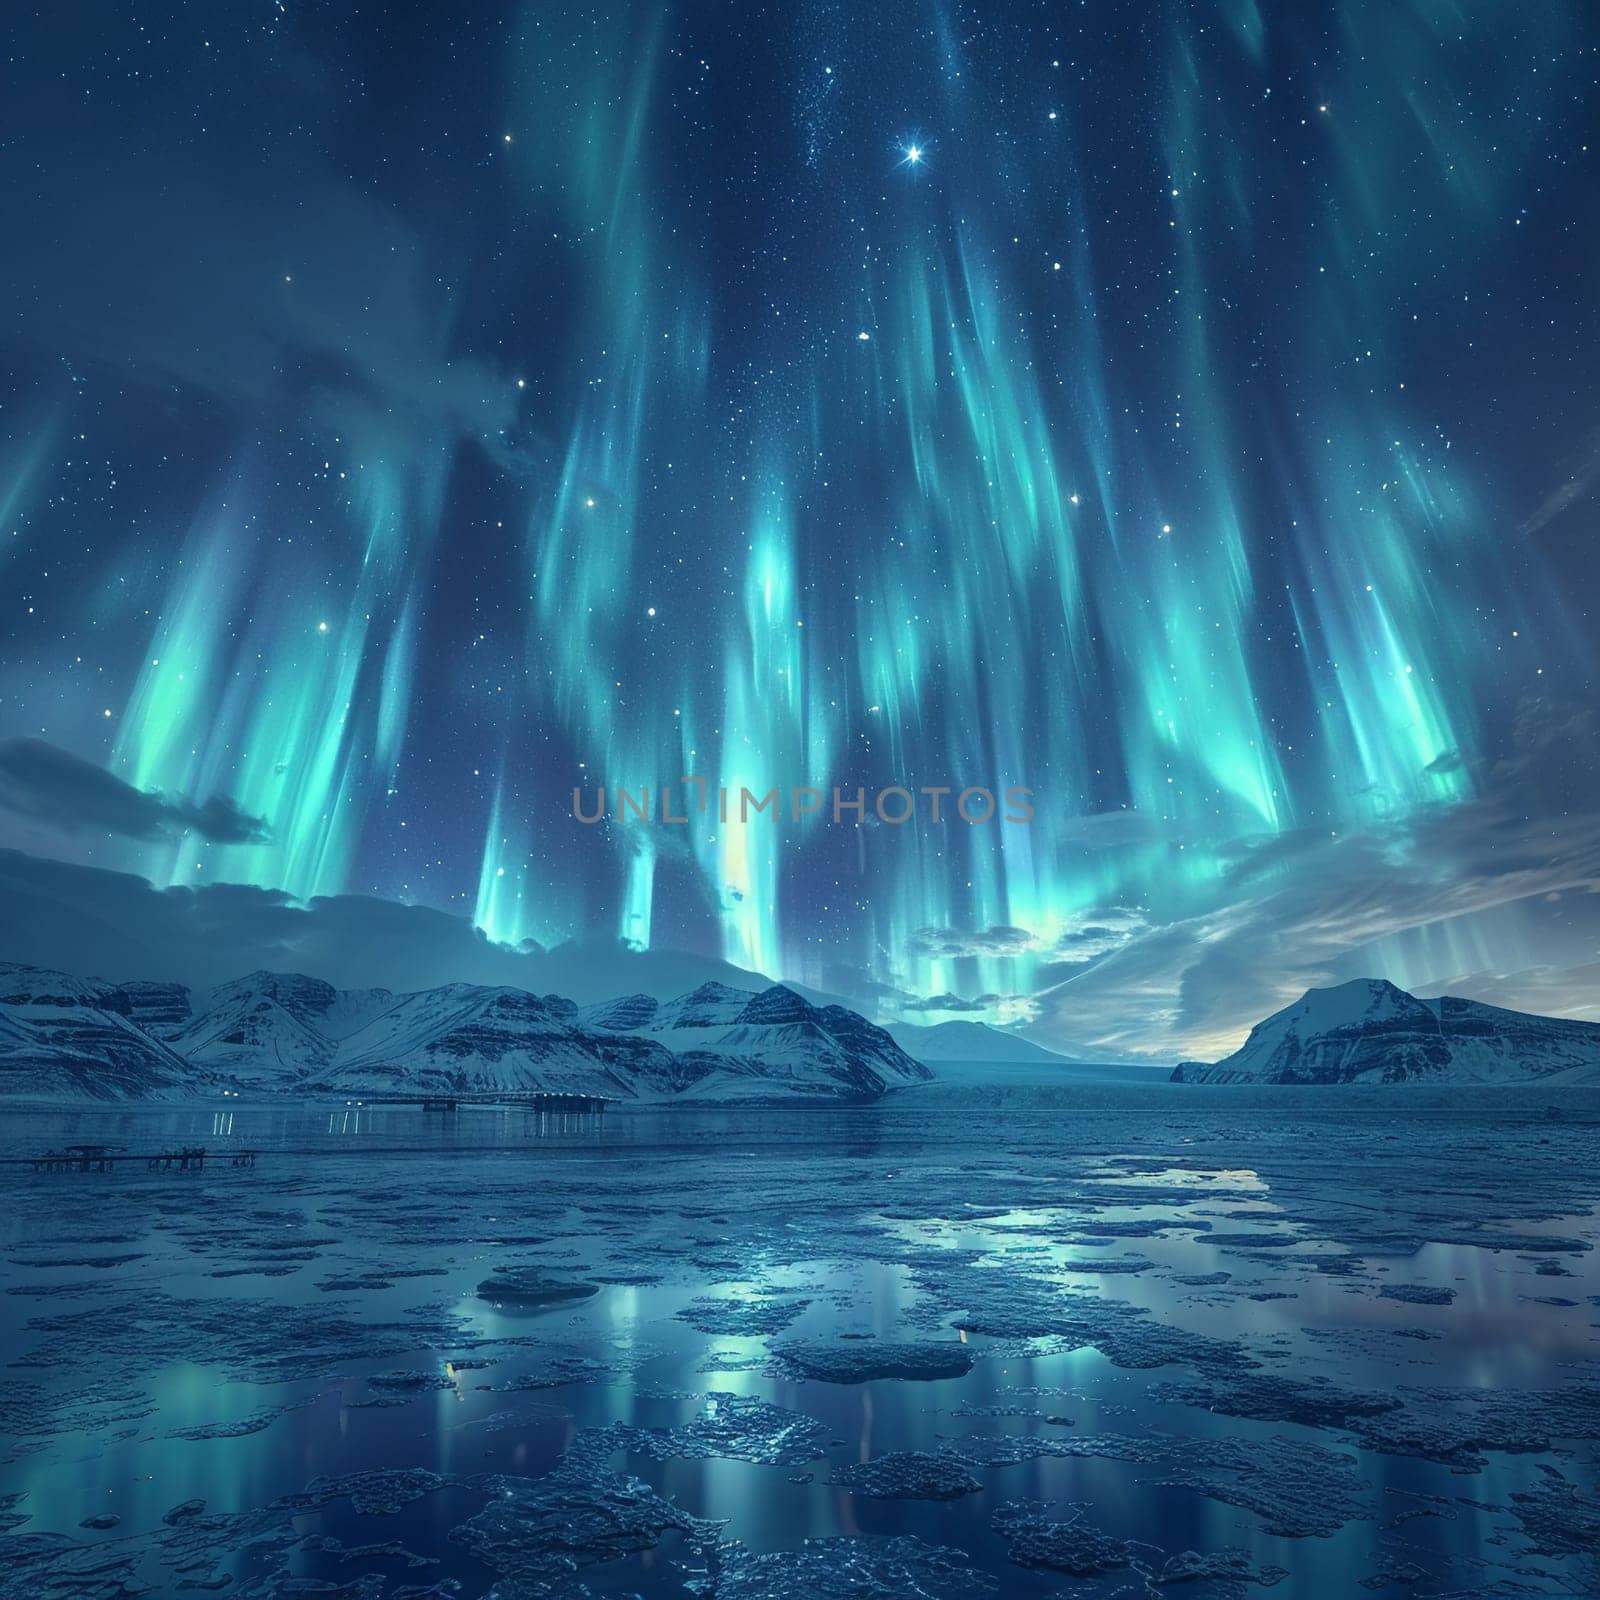 Aurora borealis illuminating the night sky by Benzoix